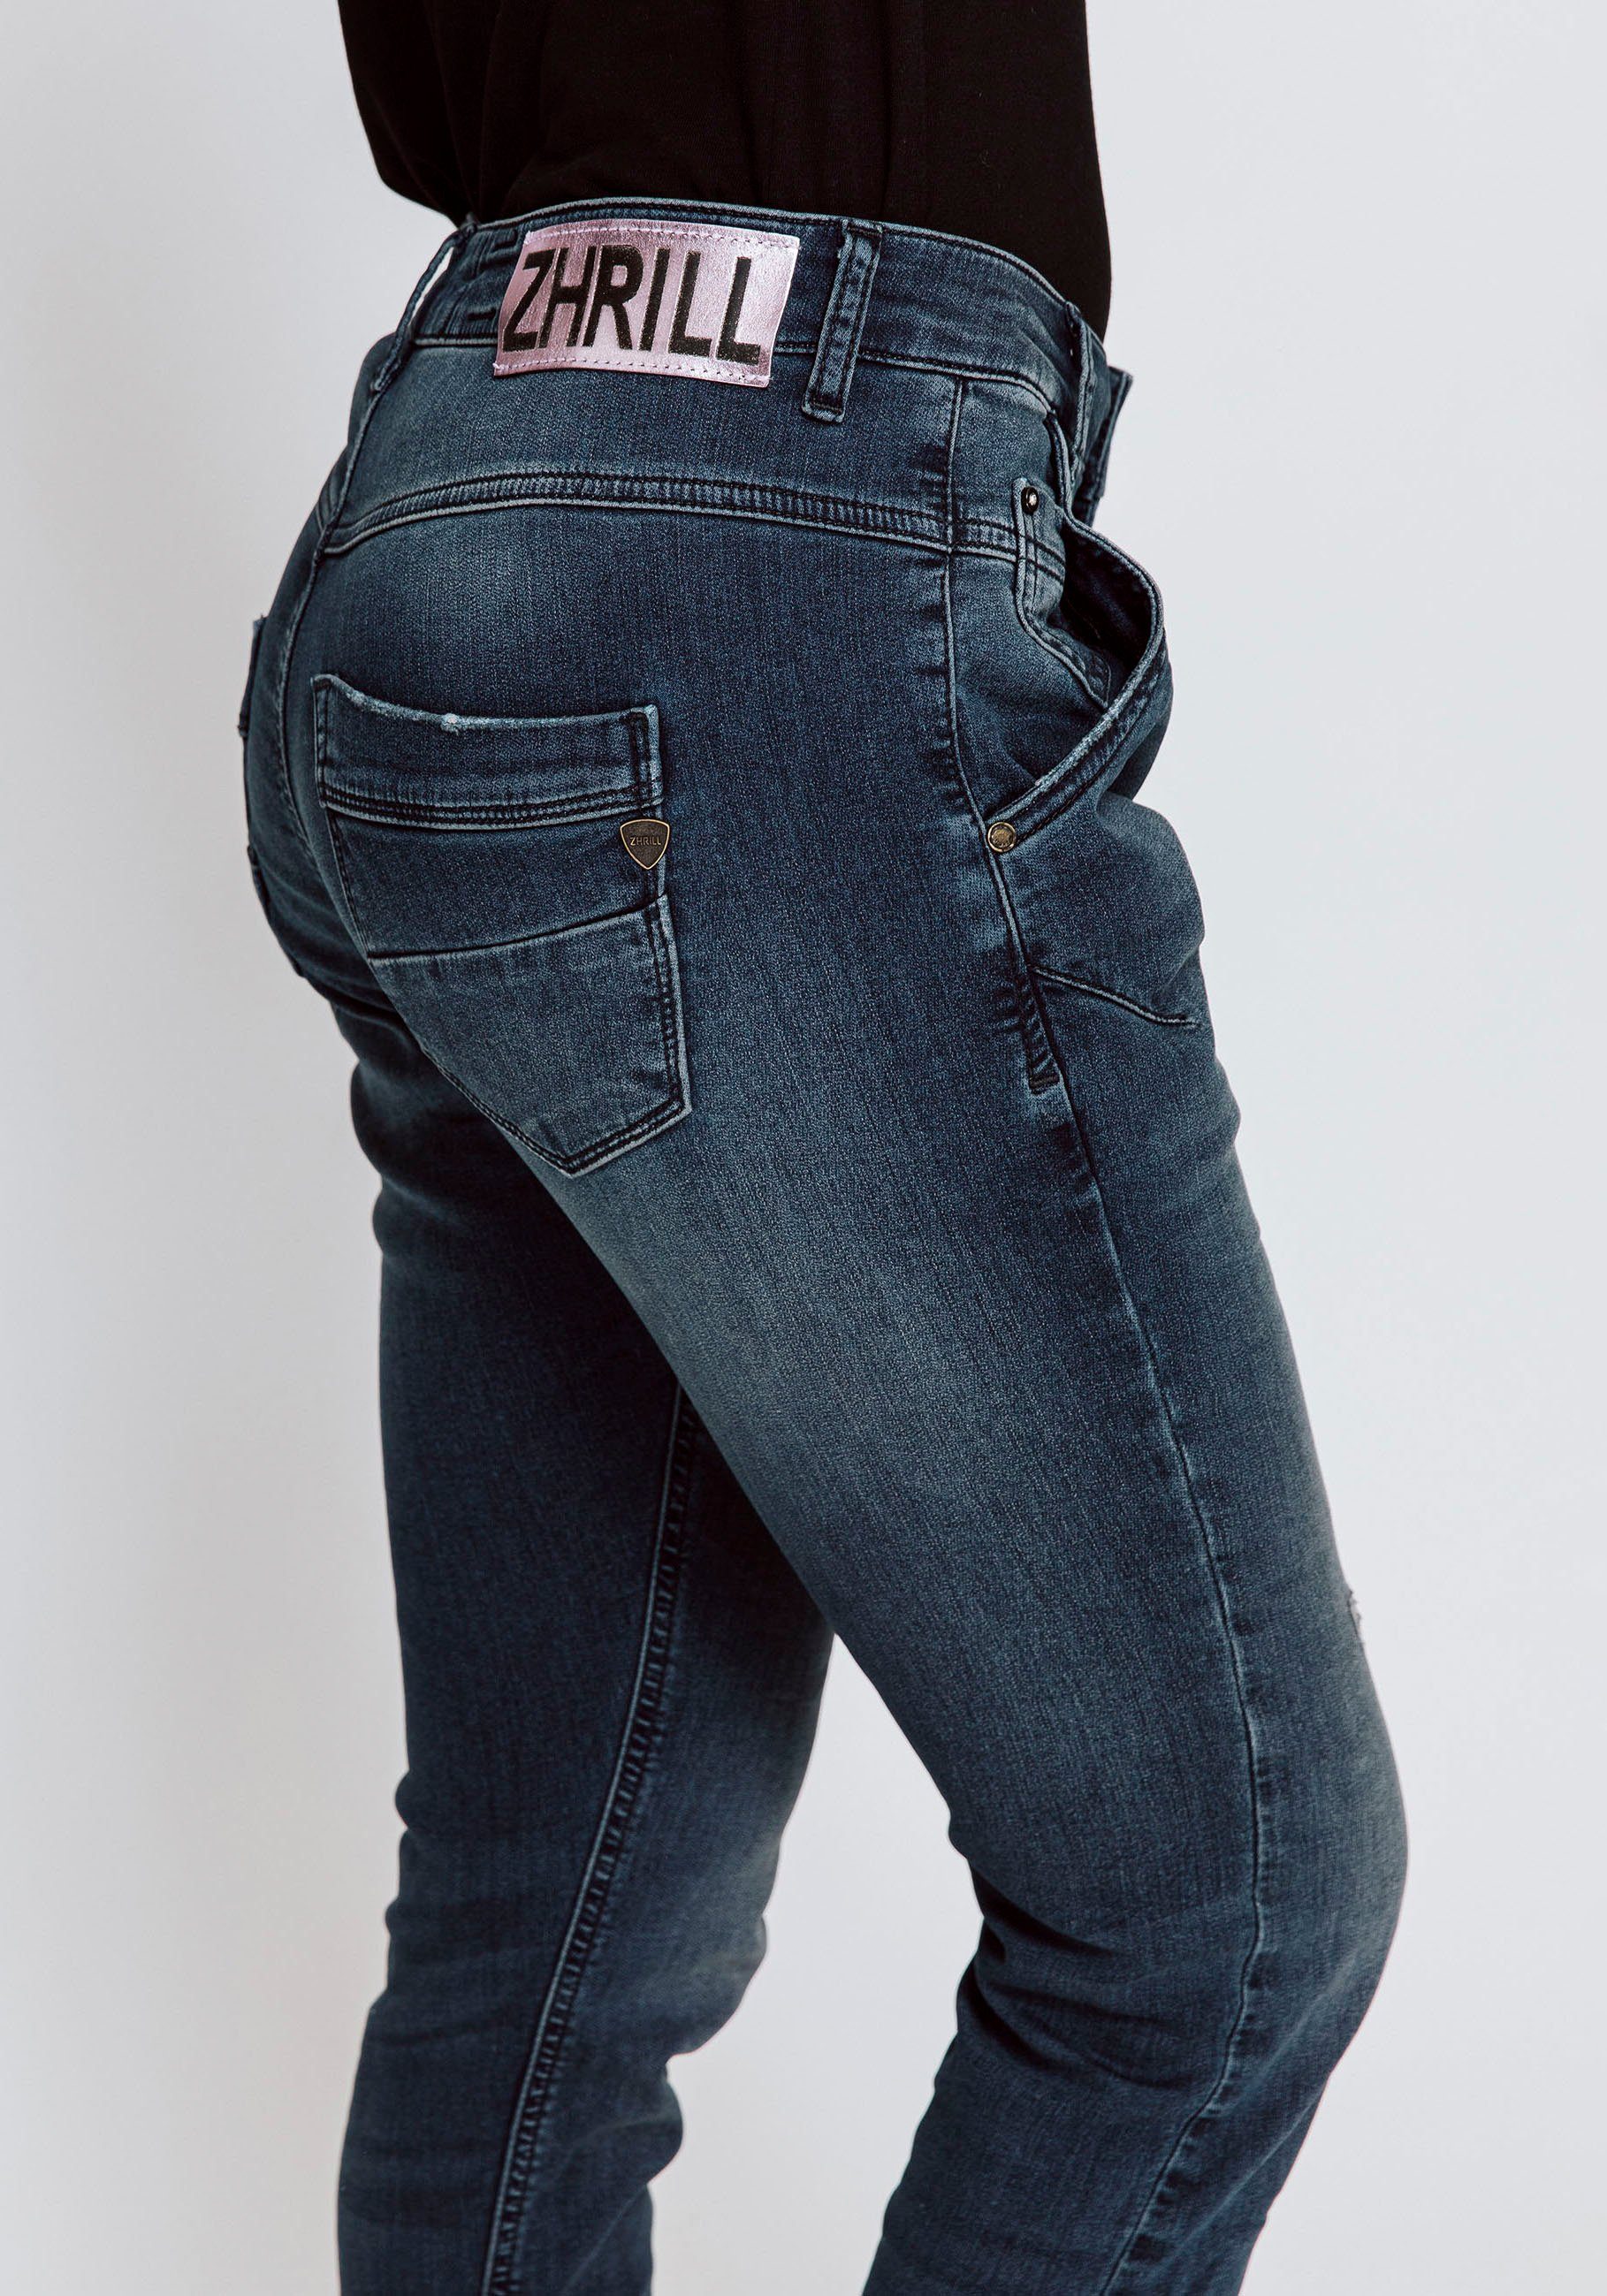 Damen Jeans Zhrill Ankle-Jeans AMY mit sichtbarer Knopfleiste